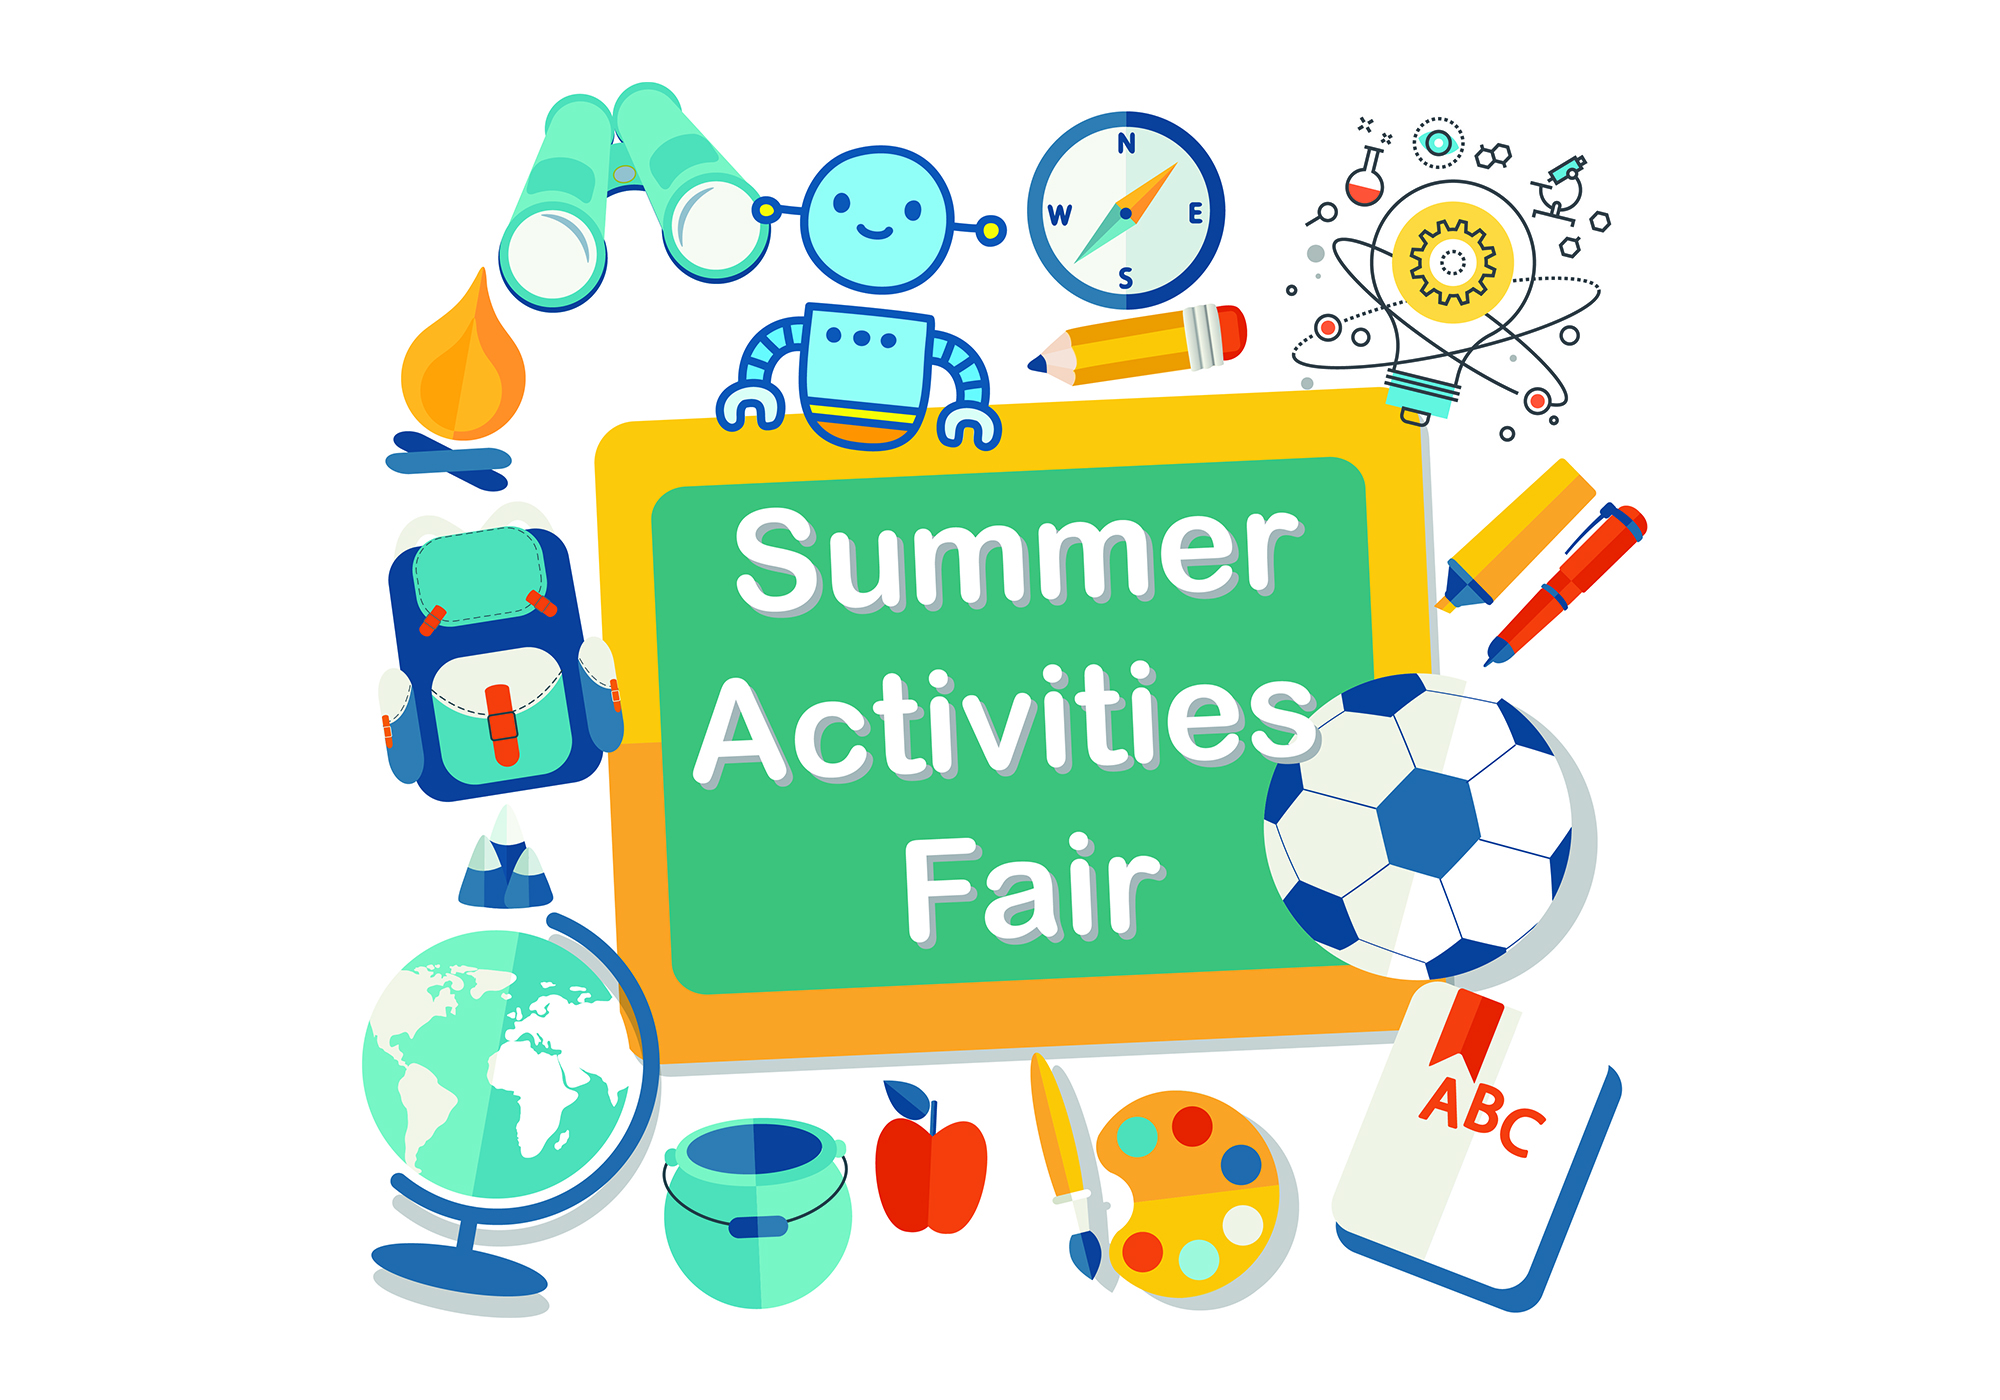 Summer Activities Fair logo